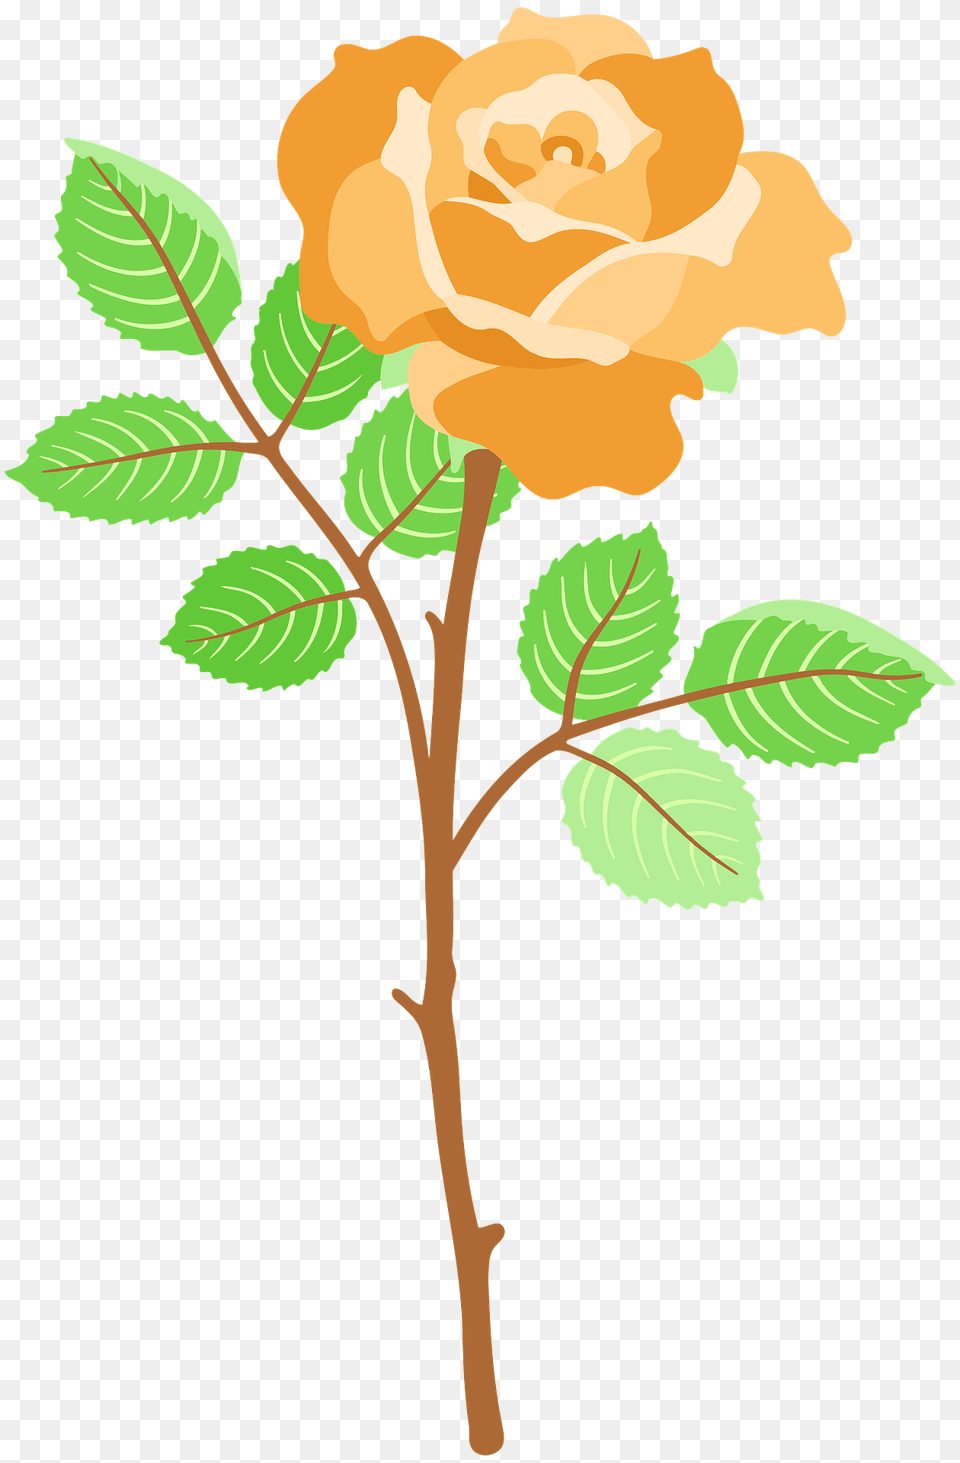 Orange Rose On The Stem Clipart, Flower, Plant, Leaf, Pattern Png Image